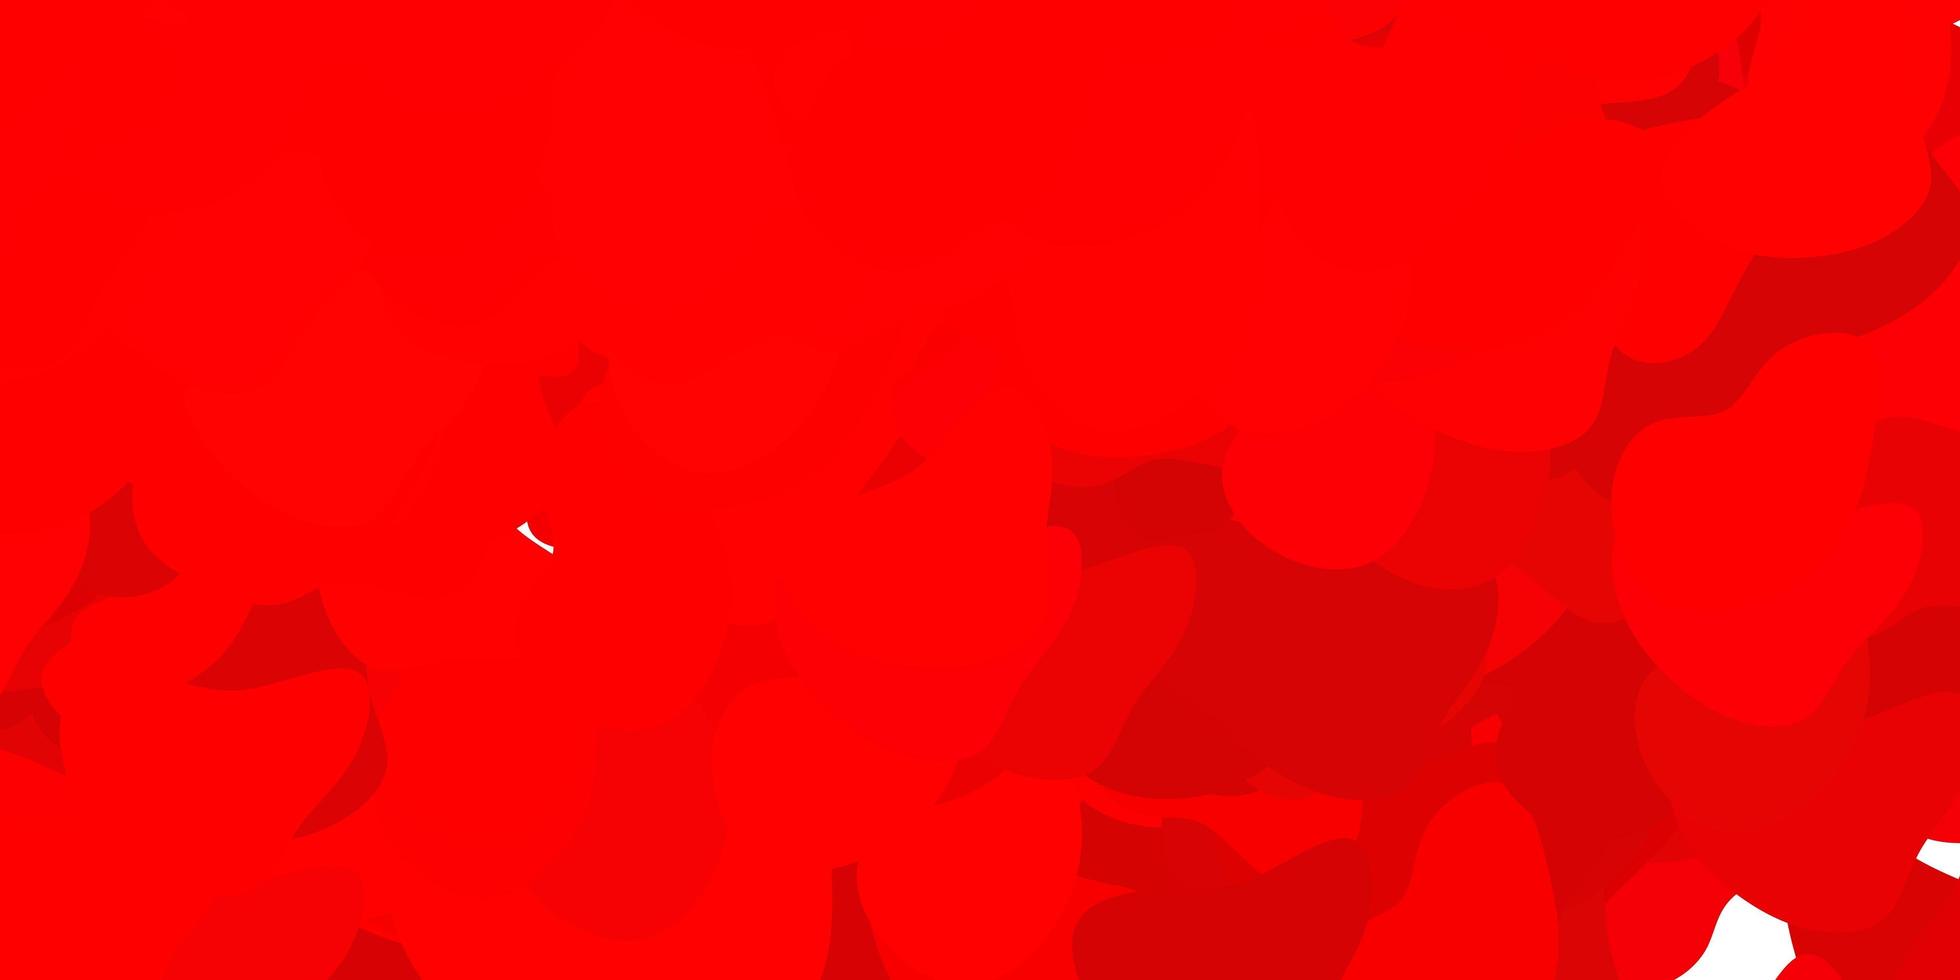 sfondo vettoriale rosso scuro con forme casuali